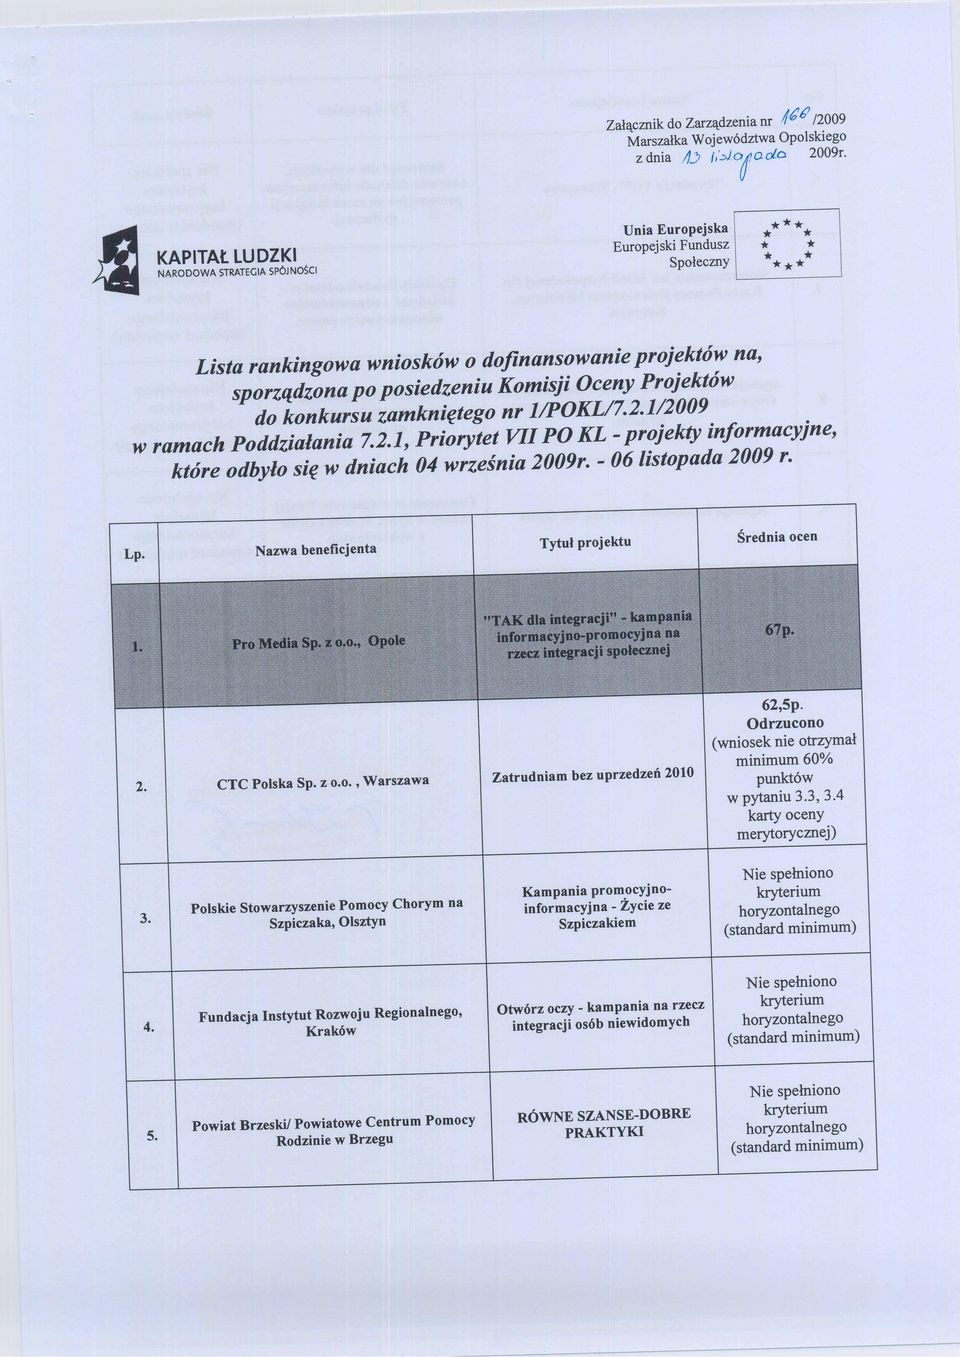 Komisji Oceny Projektów do konkursu zamkniętego nr 1/POKL/7.2.1/2009 w ramach Poddziałania 7.2.1, Priorytet VII PO KL -projekty informacyjne, które odbyło się w dniach 04 września 2009r.